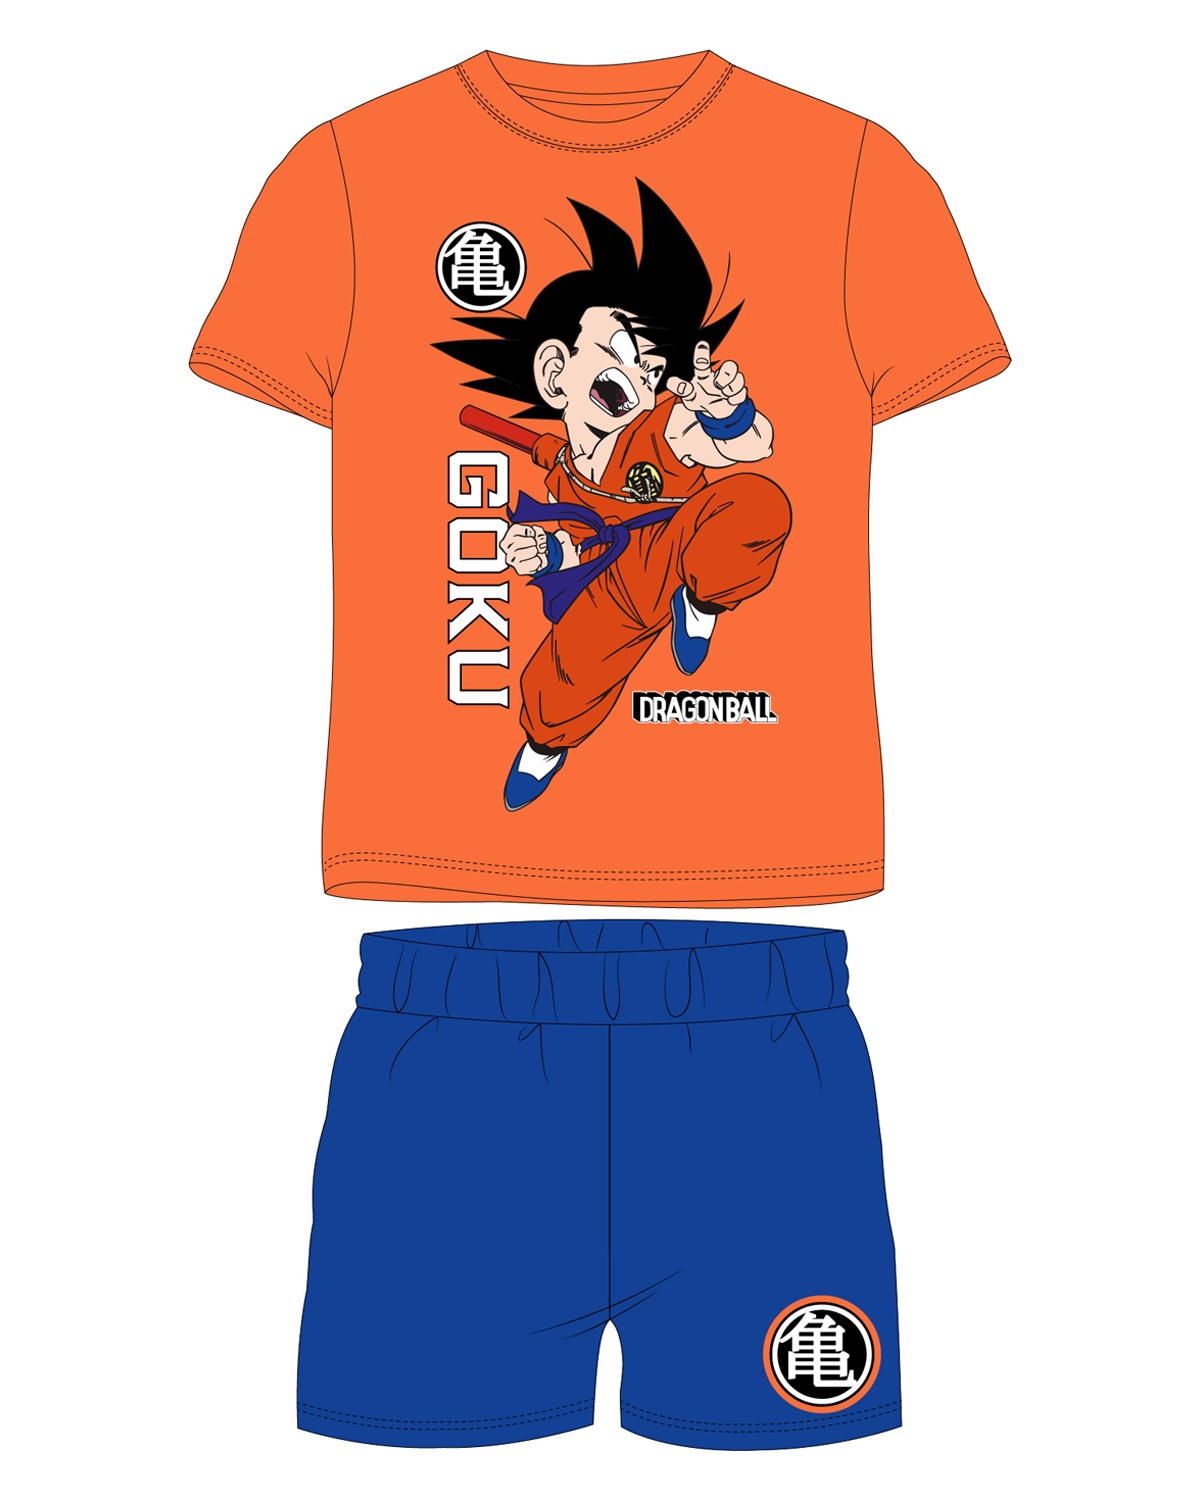 Dragon Ball - licence Chlapecké pyžamo - Dragon Ball 5204072, oranžová / modrá Barva: Oranžová, Velikost: 152